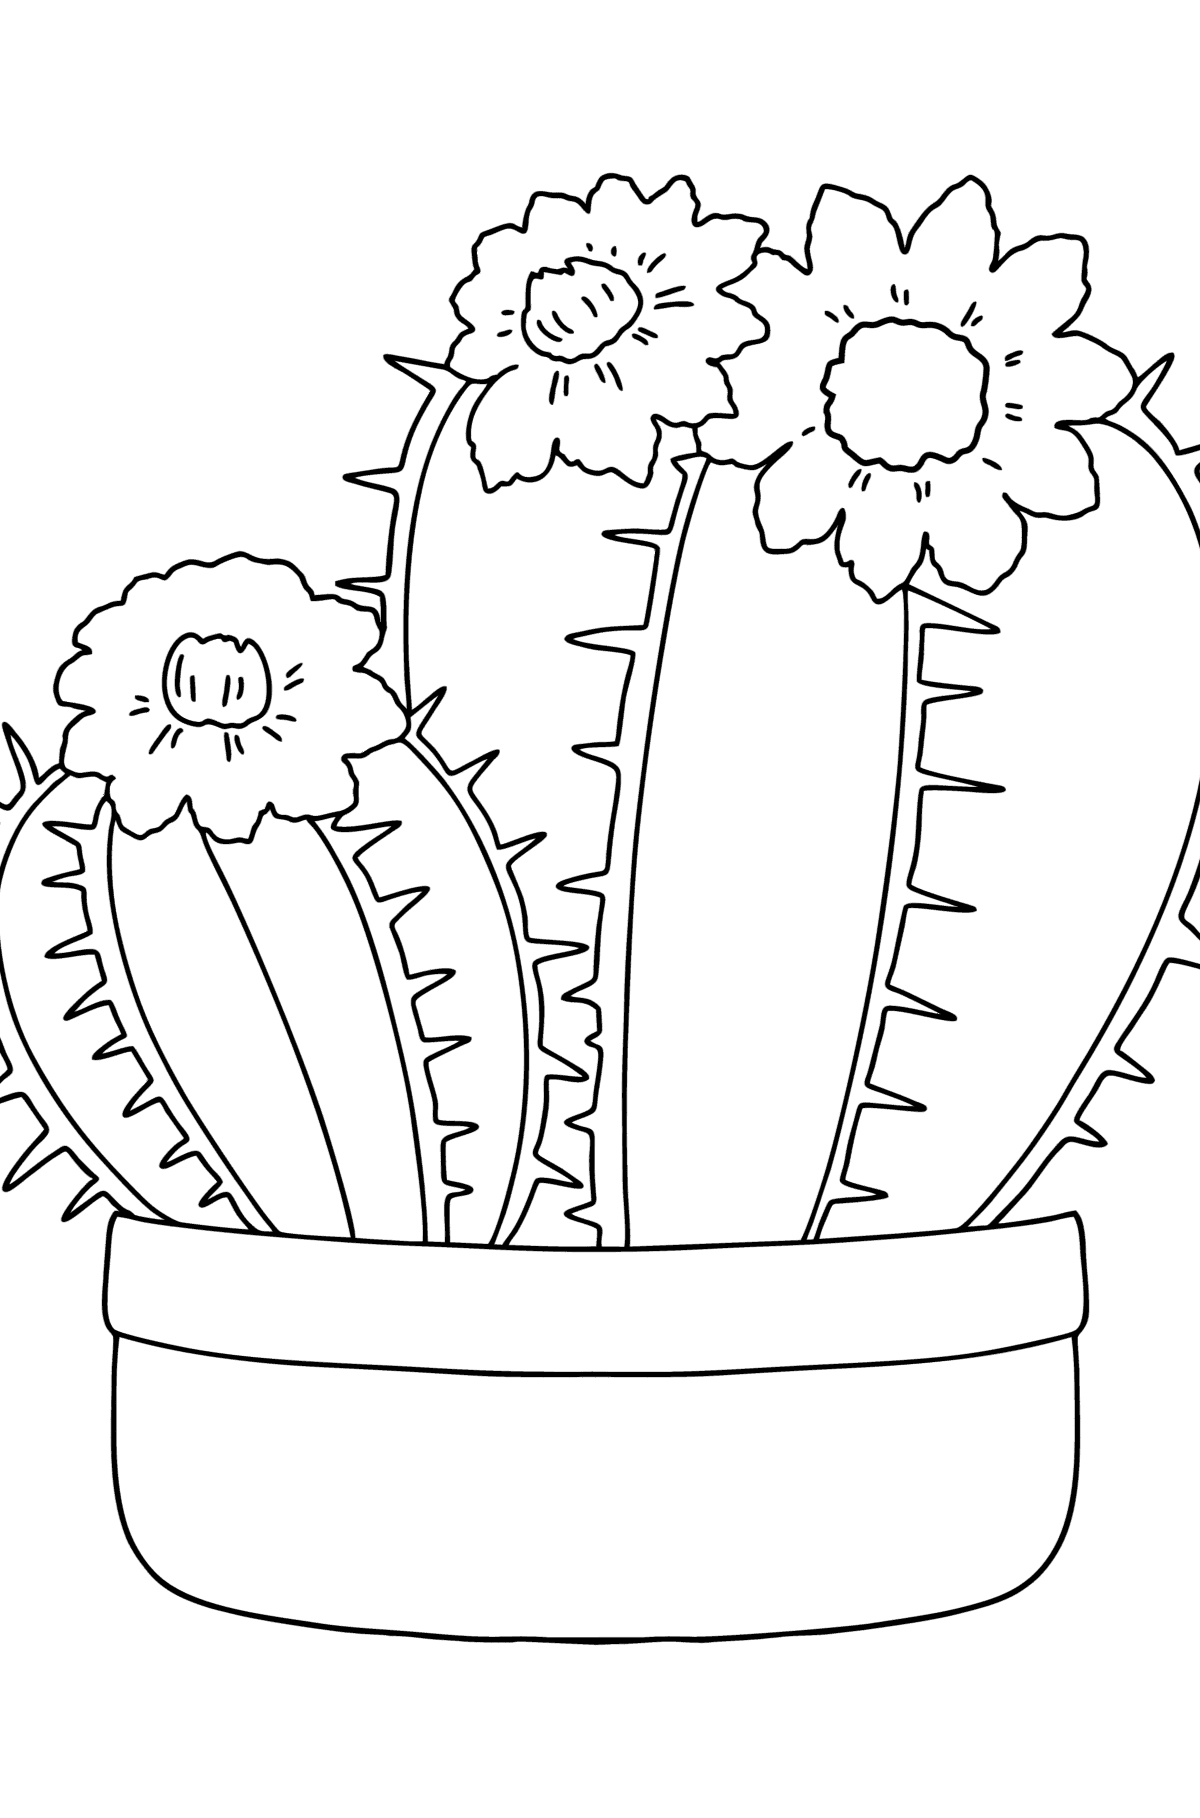 Tegning til fargelegging ikke kaktus - Tegninger til fargelegging for barn